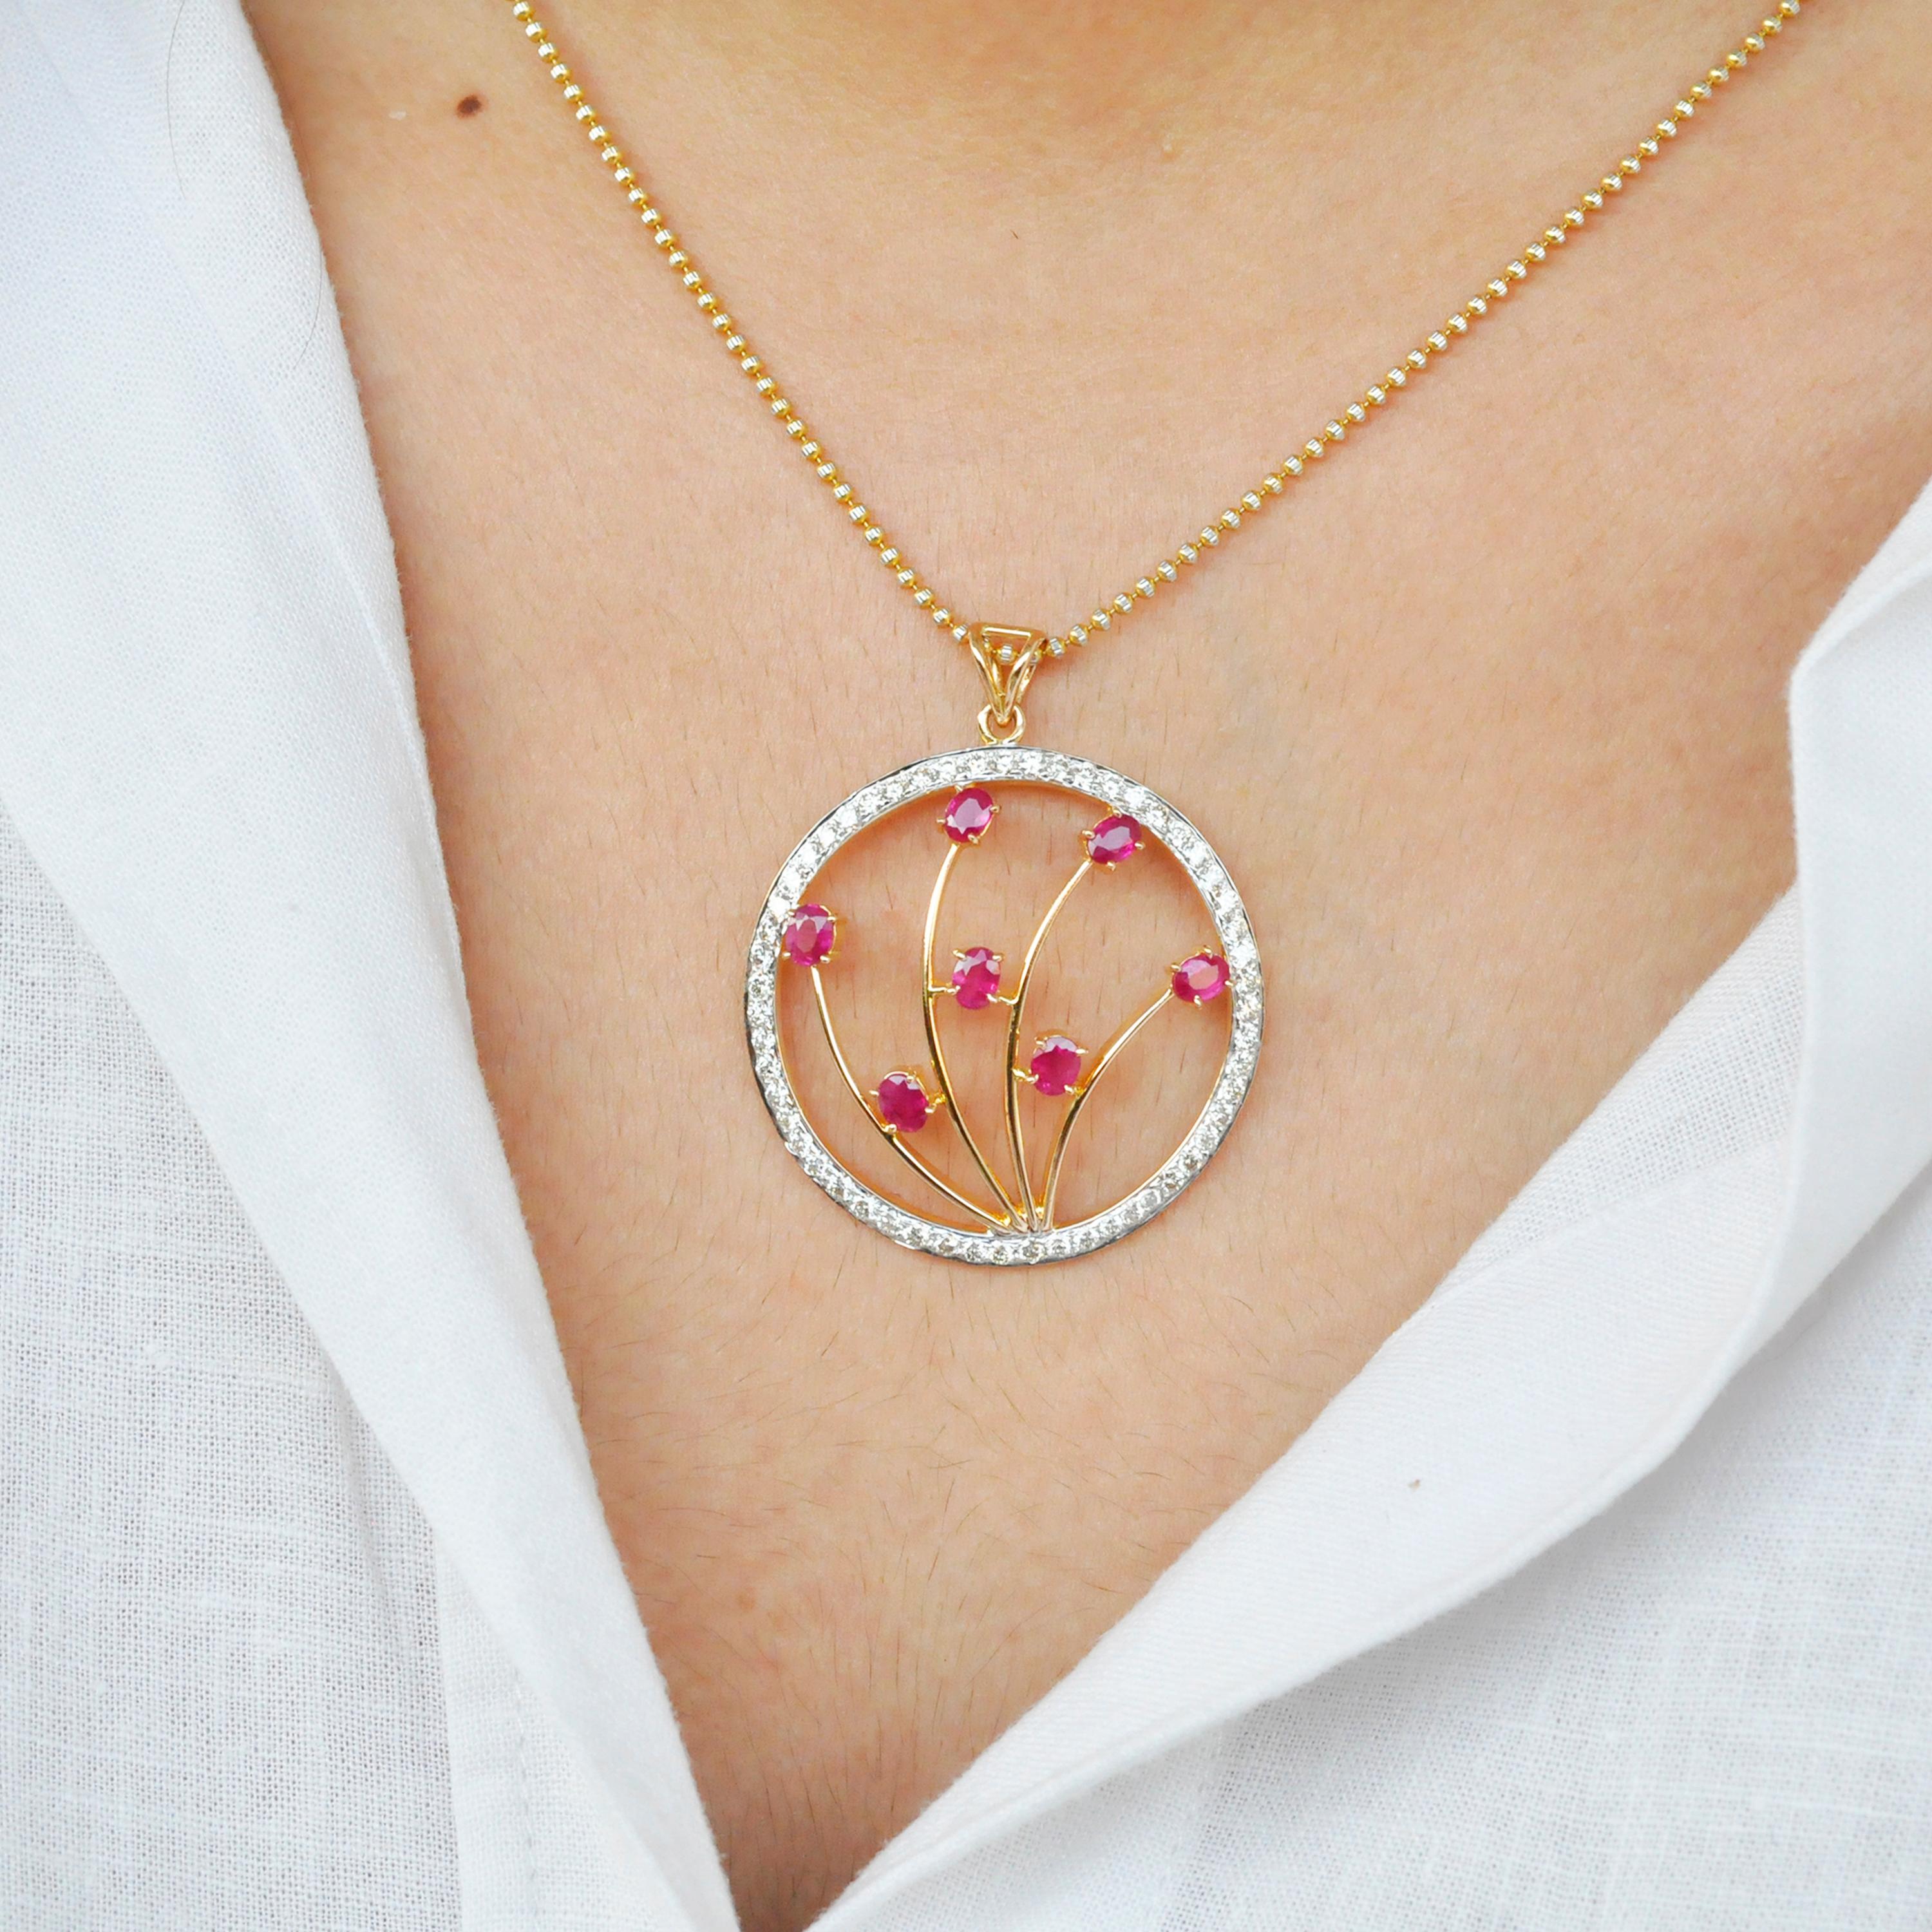 18 Karat Gold Oval Rubin Diamant Kreis Anhänger Halskette.

Eine moderne Diamant-Rubin-Kreis-Anhänger-Halskette ist perfekt für Ihren Alltag. Die Rubine sind oval, 4x3 mm groß, extrem glänzend und von angenehmer rosa-roter Farbe, die sich durch den